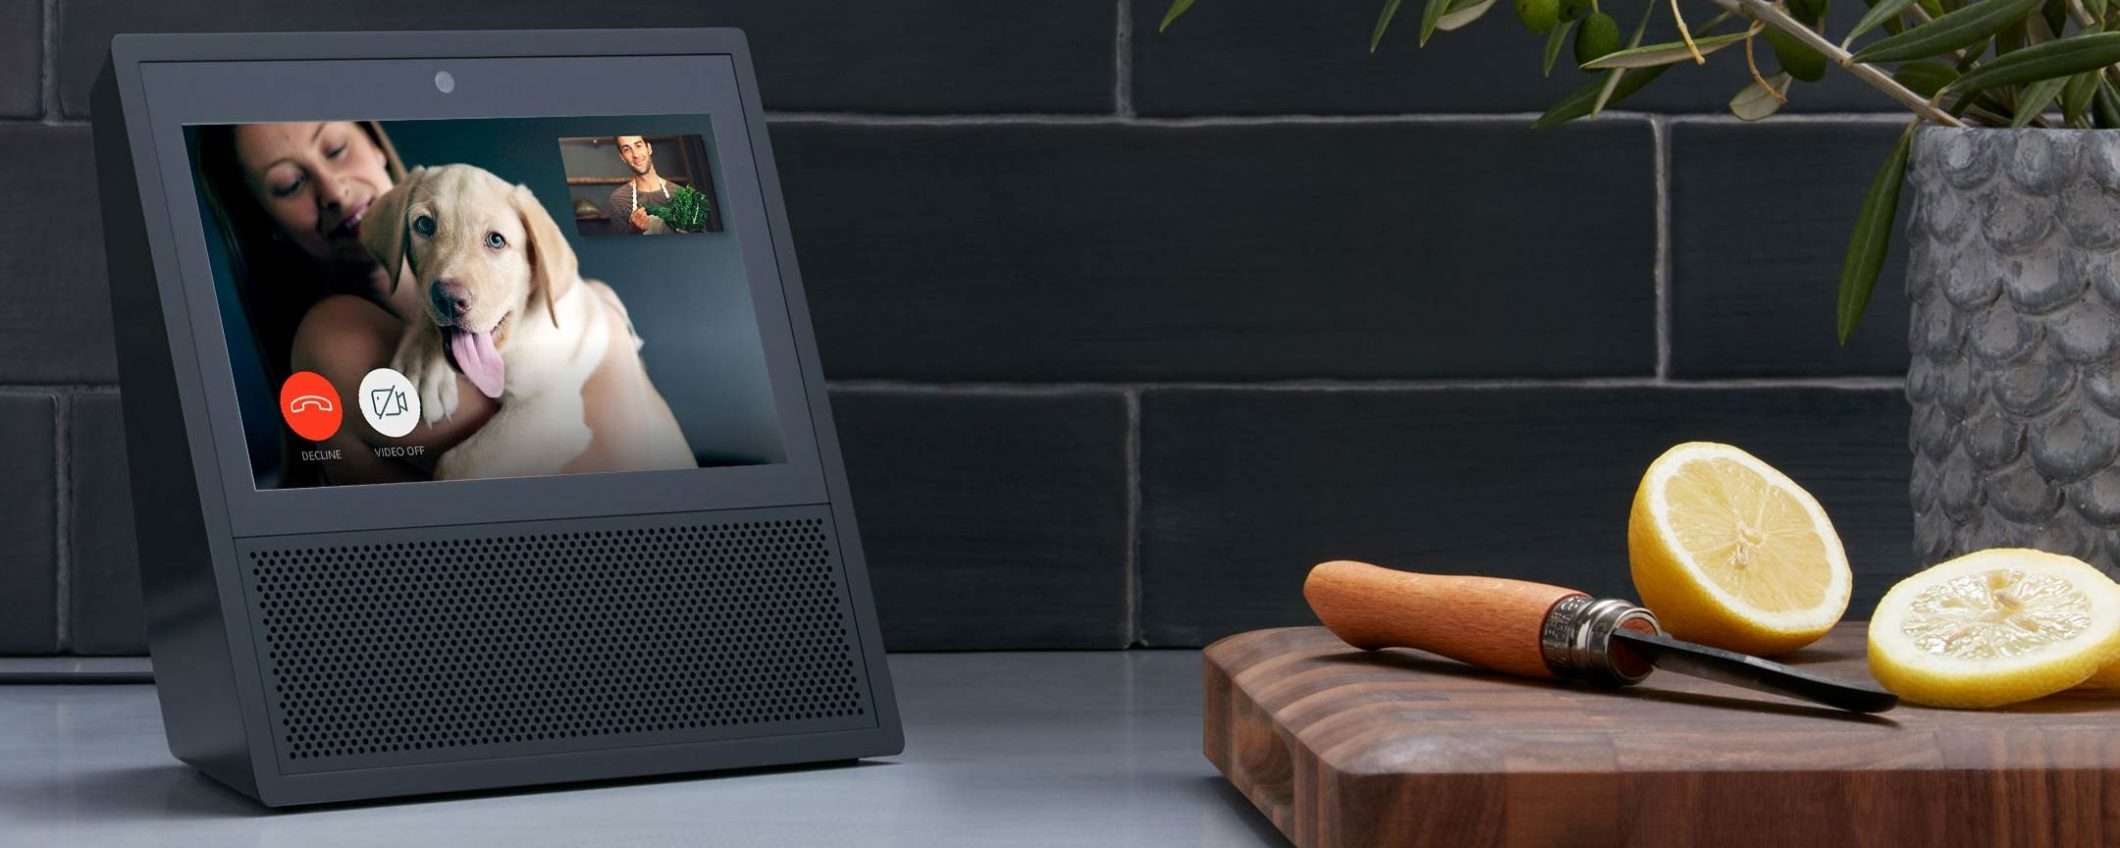 Amazon porterà Alexa ovunque, anche nel microonde